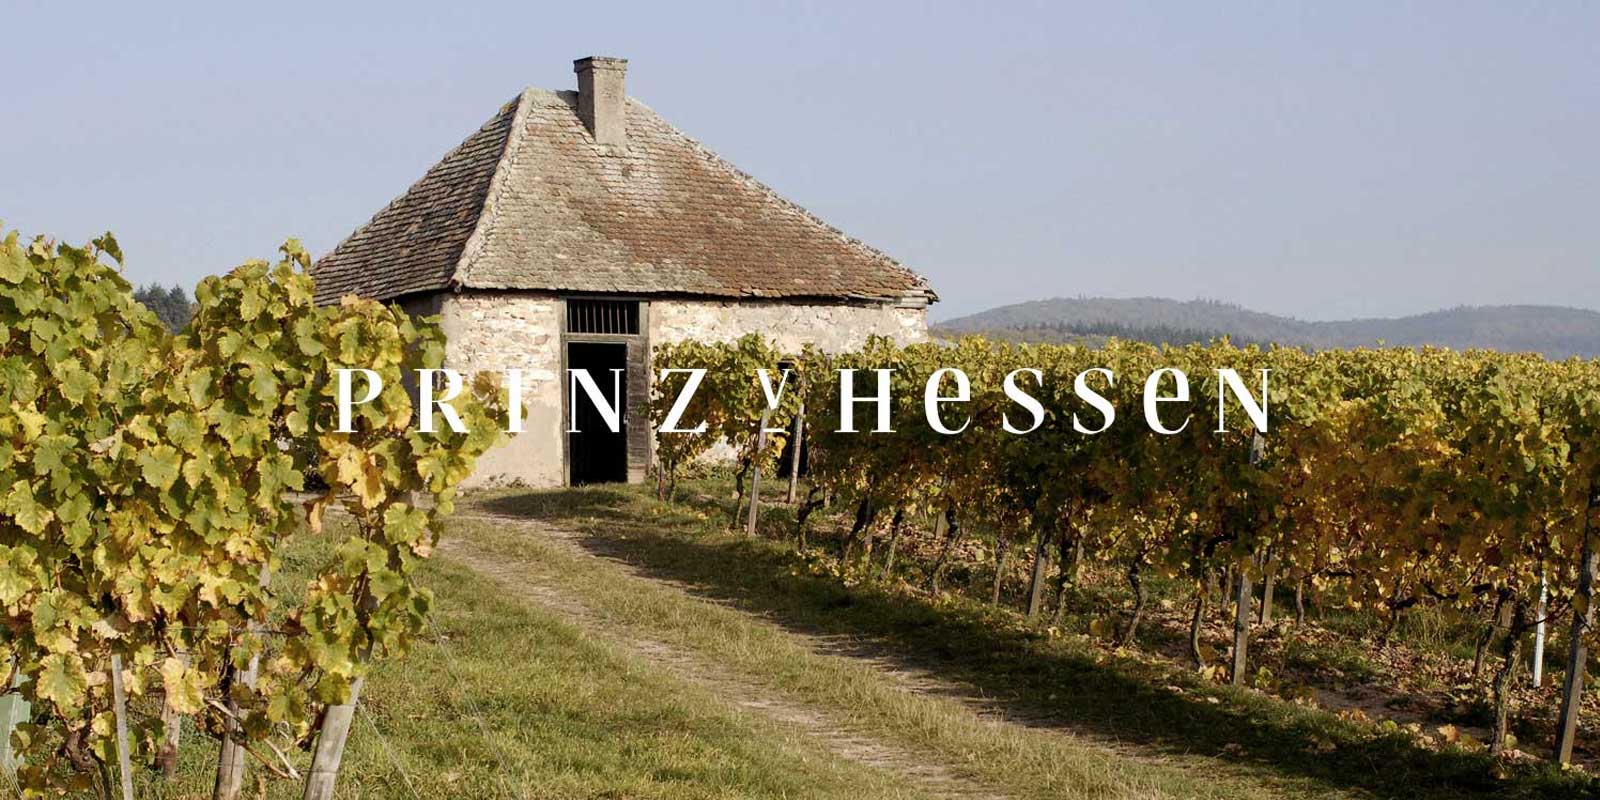 Vinarstvo Prince of Hesse - vinarska oblast Rheingau Vinarstvo PRINZ VON HESSEN v Johannisbergu v Rheingau je jednym z poprednych vyrobcov rizlingu v Nemecku a je zakladajucim clenom VDP regionalneho zdruzenia Rheingau. Pocetne uznania doma i v zahranici odzrkadluju vinarstvo PRINZ VON HESSEN, ktore je na spickovej urovni. Vina a sumive vina z vinarstva PRINZ VON HESSEN ziskali mnozstvo oceneni a ziskali vysoke medzinarodne ocenenia.